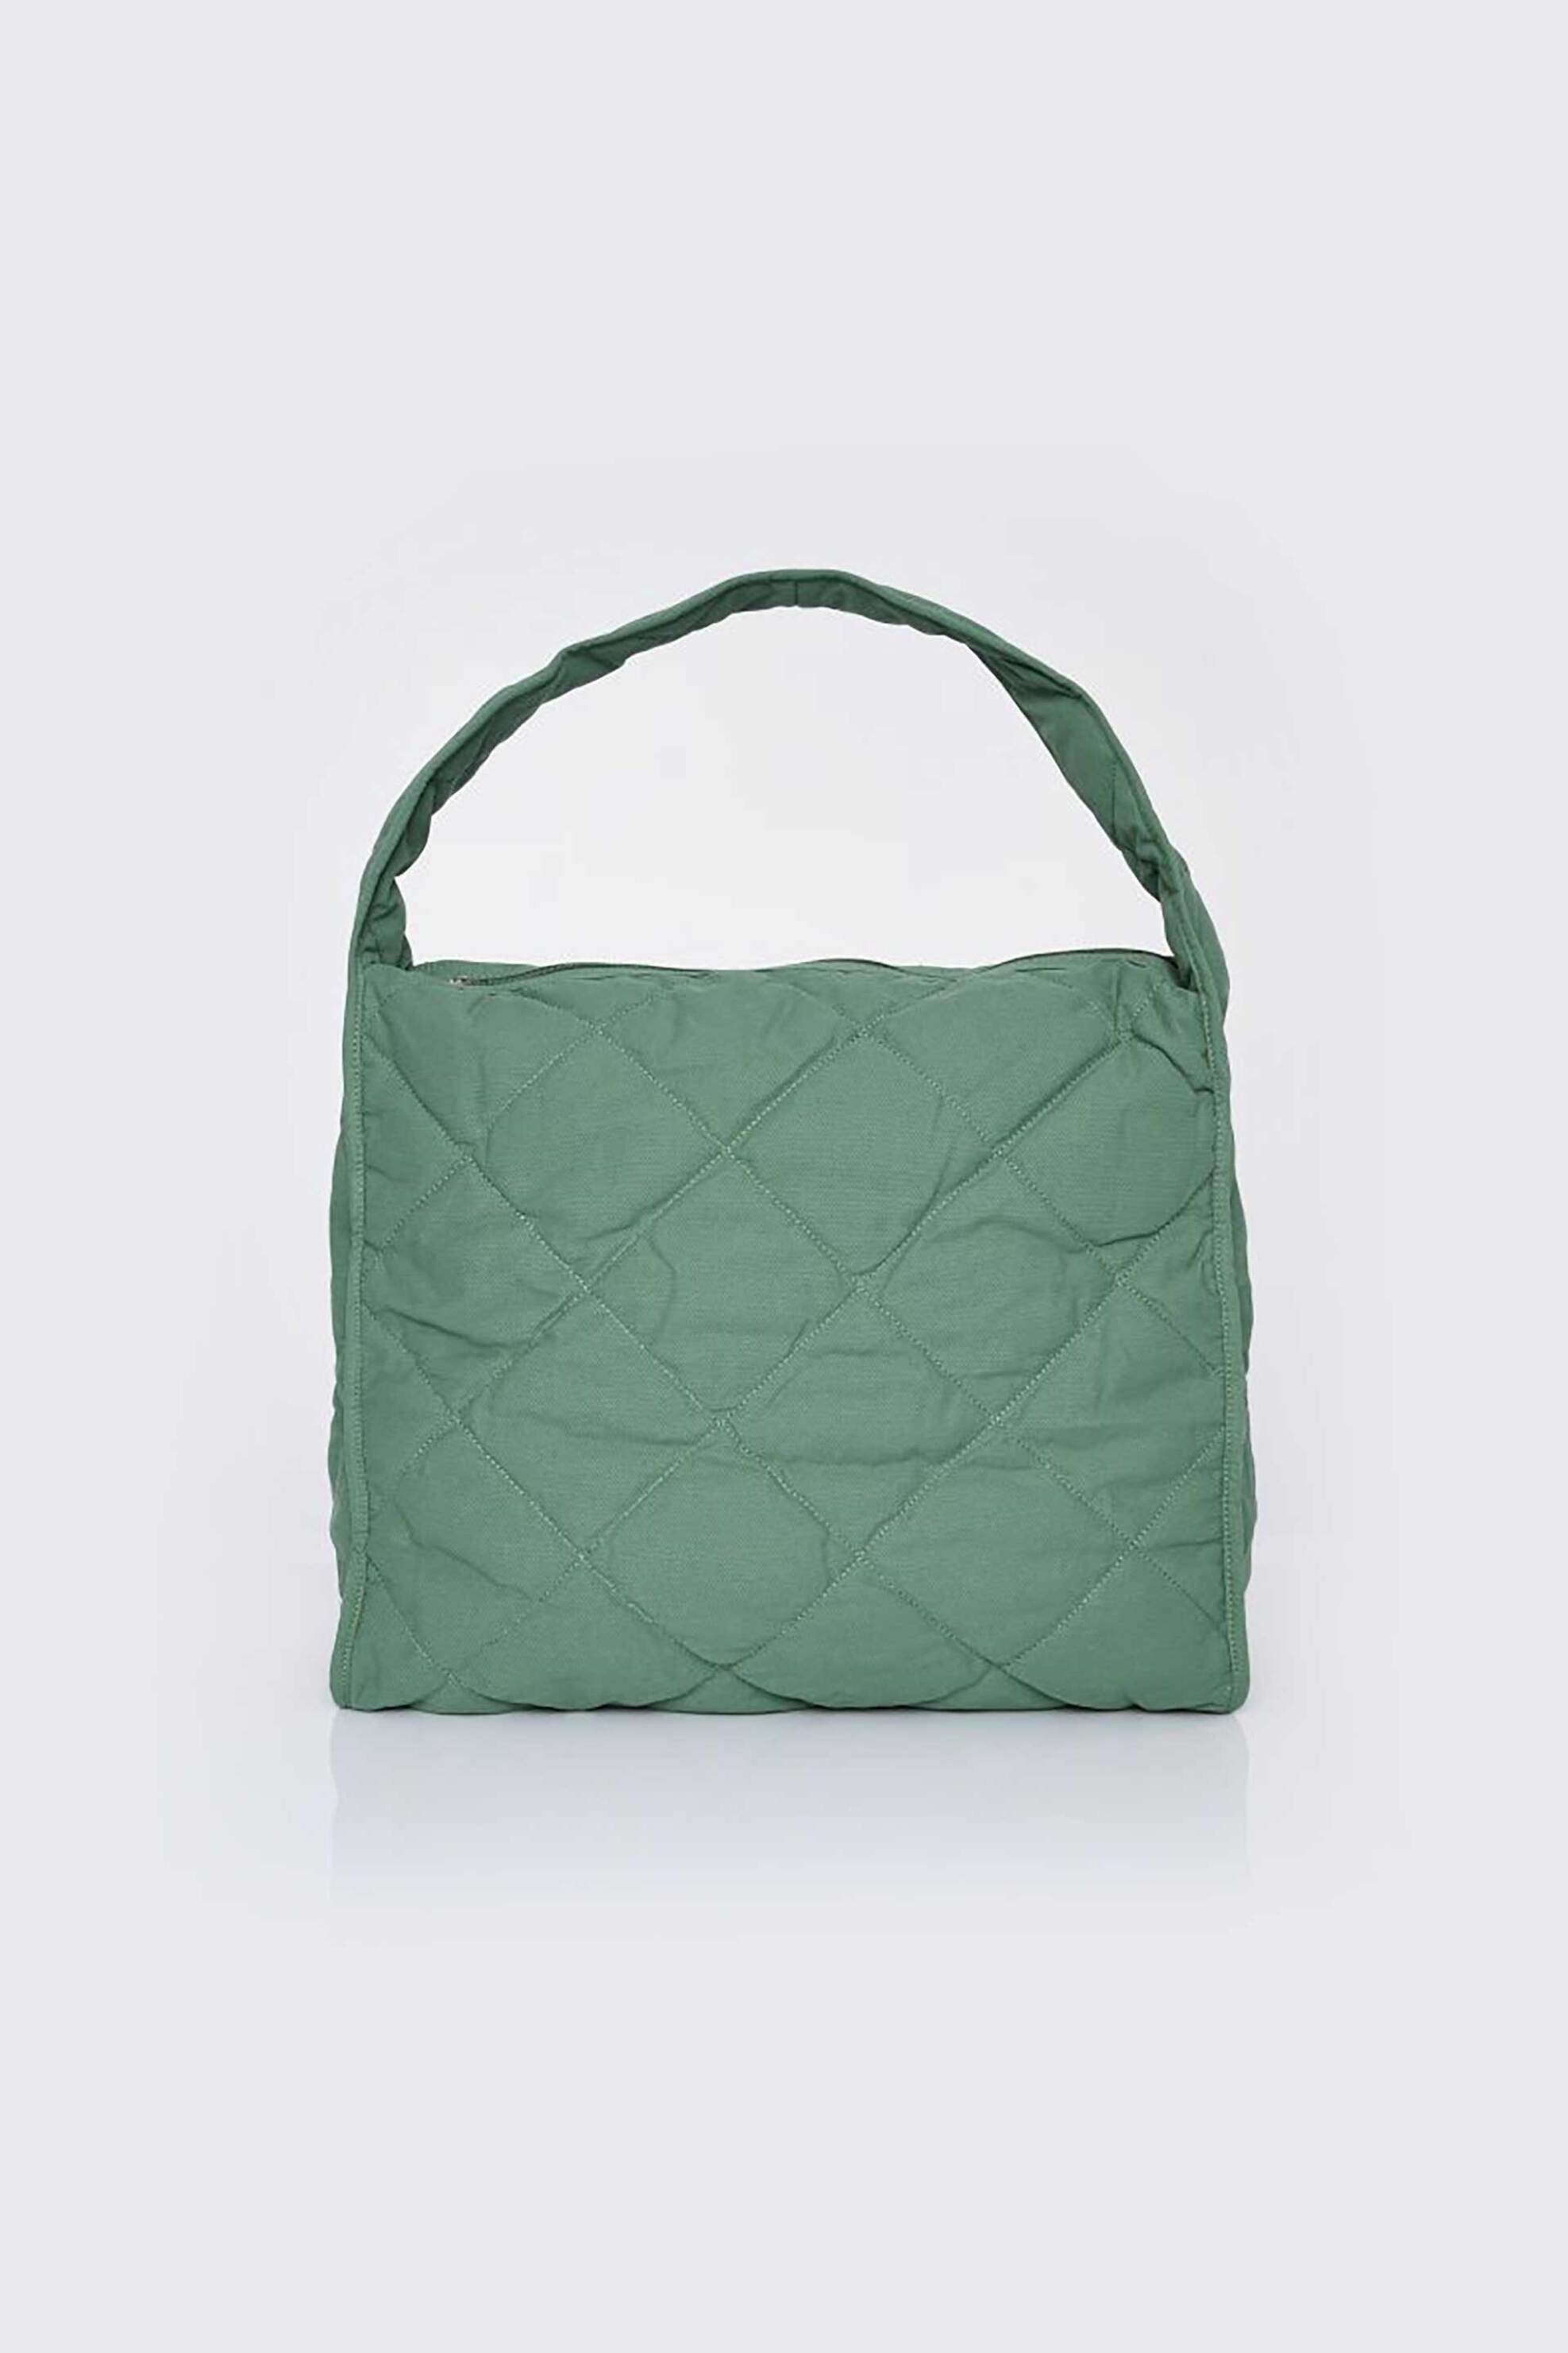 Γυναικεία Ρούχα & Αξεσουάρ > Γυναικείες Τσάντες > Γυναικείες Τσάντες Ώμου & Shopper Bags 'ALE γυναικεία τσάντα shopper με καπιτονέ σχέδιο - 8T21619 Πράσινο